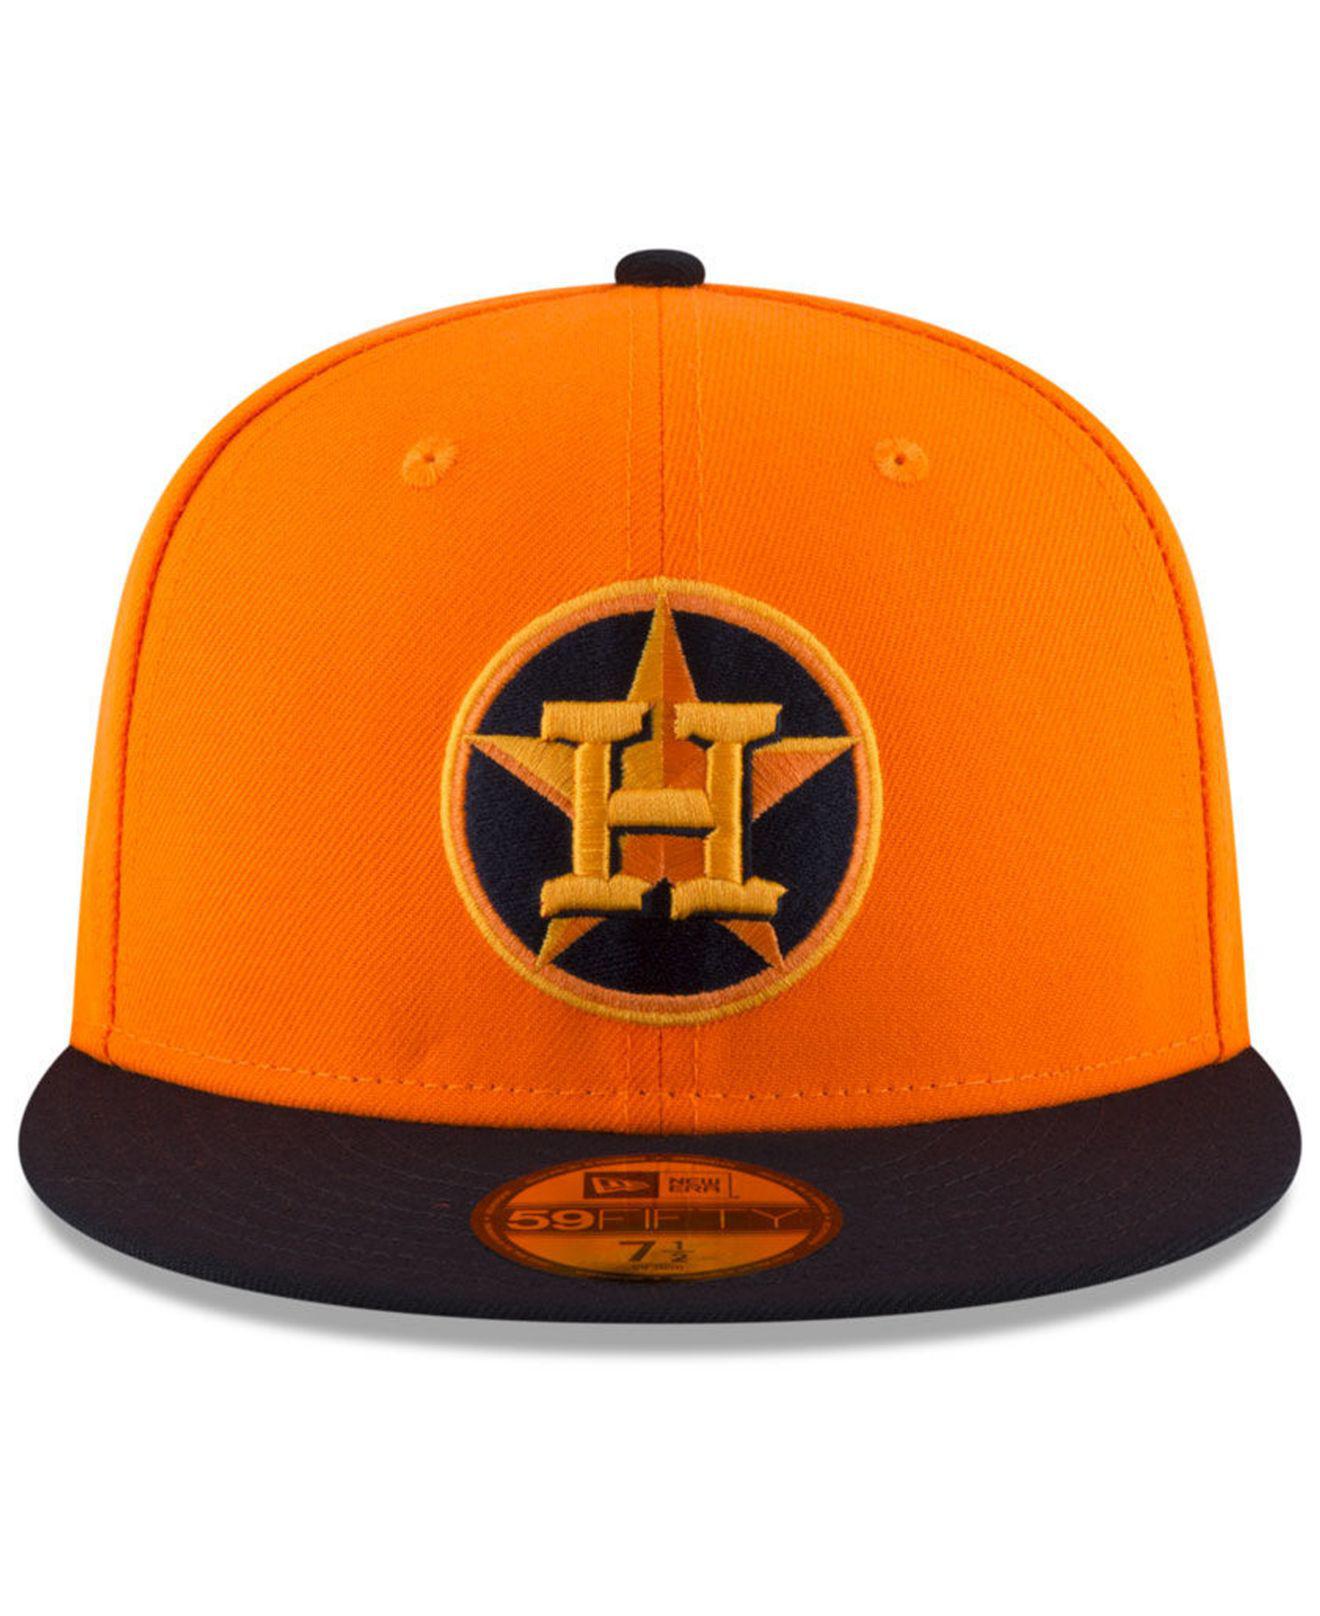 orange houston astros hat